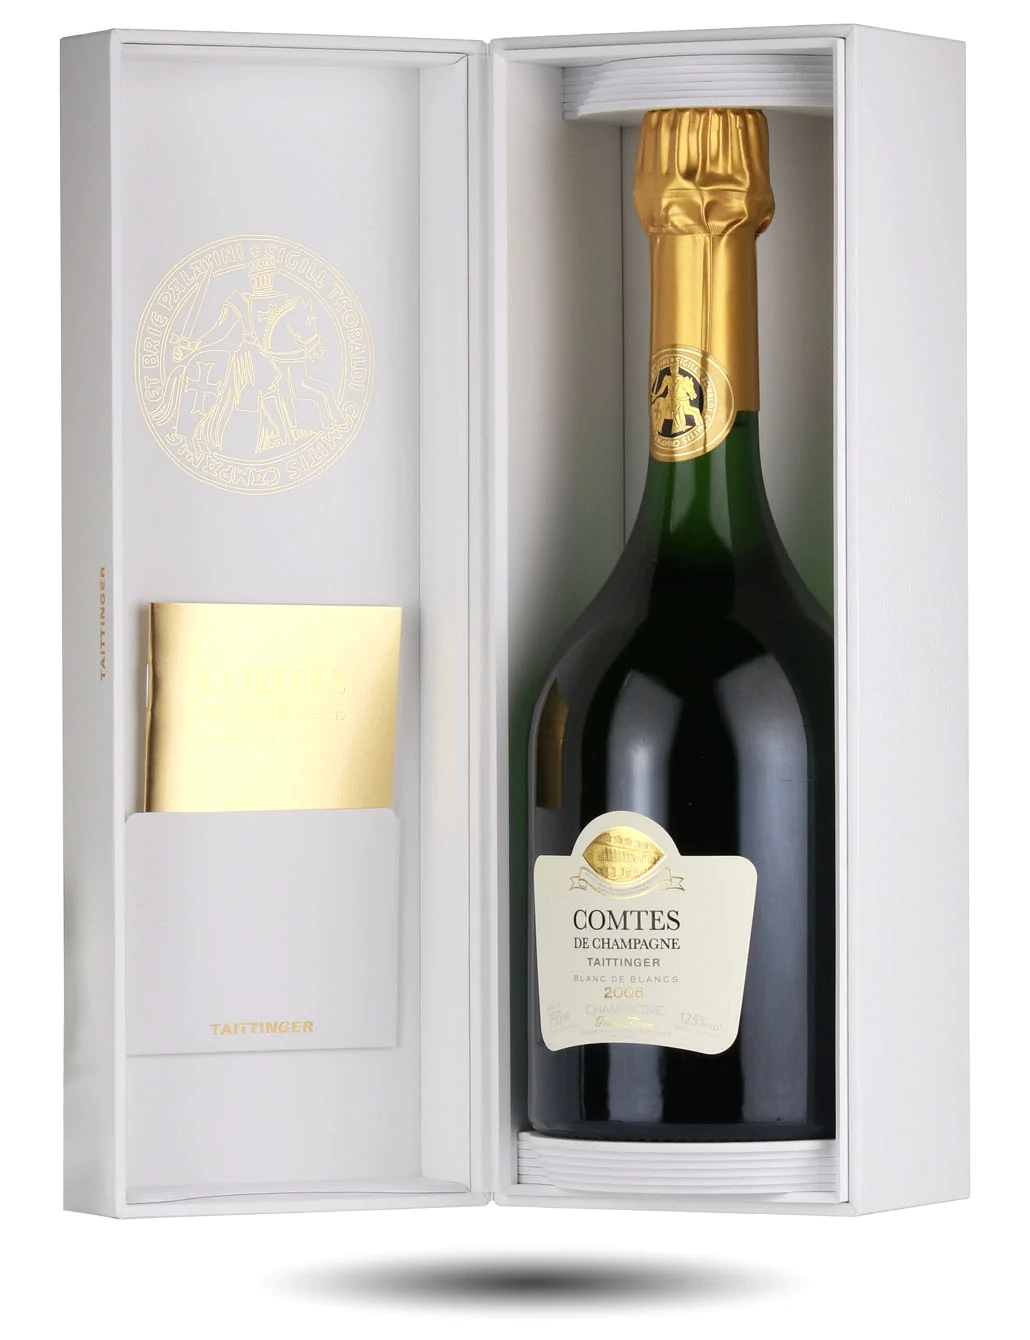 Best Champagne Brands - Taittinger